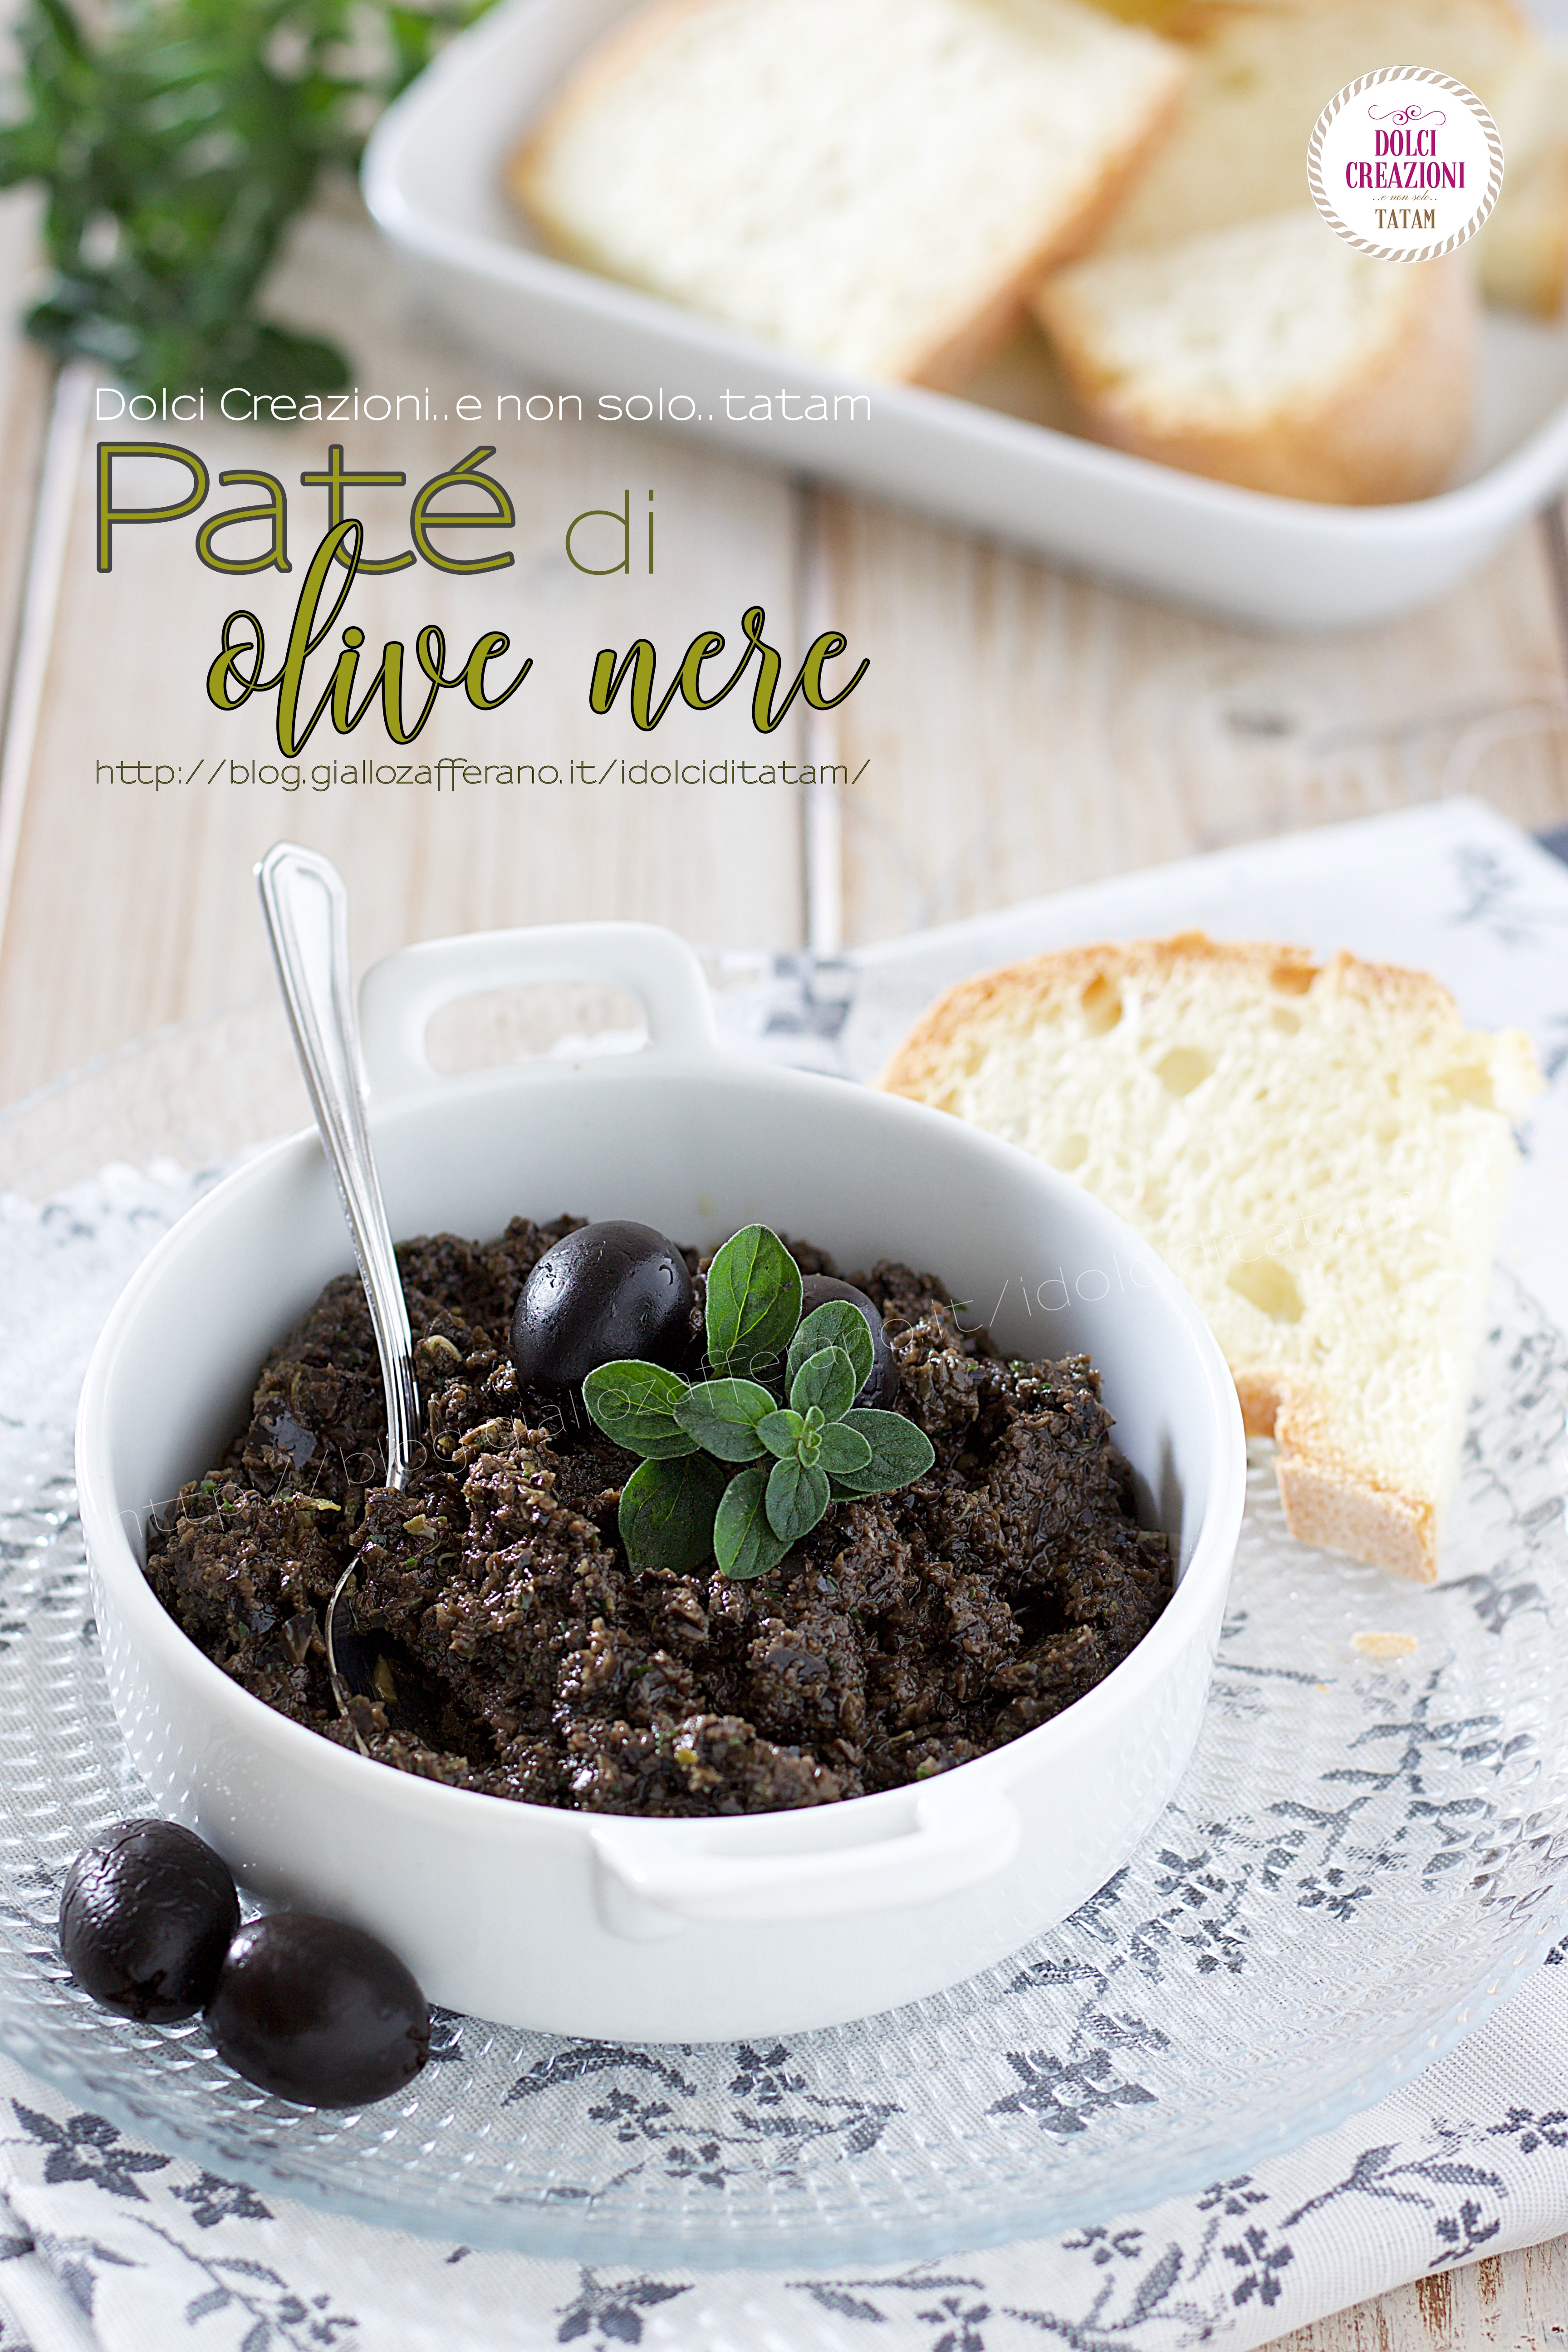 Paté di olive nere